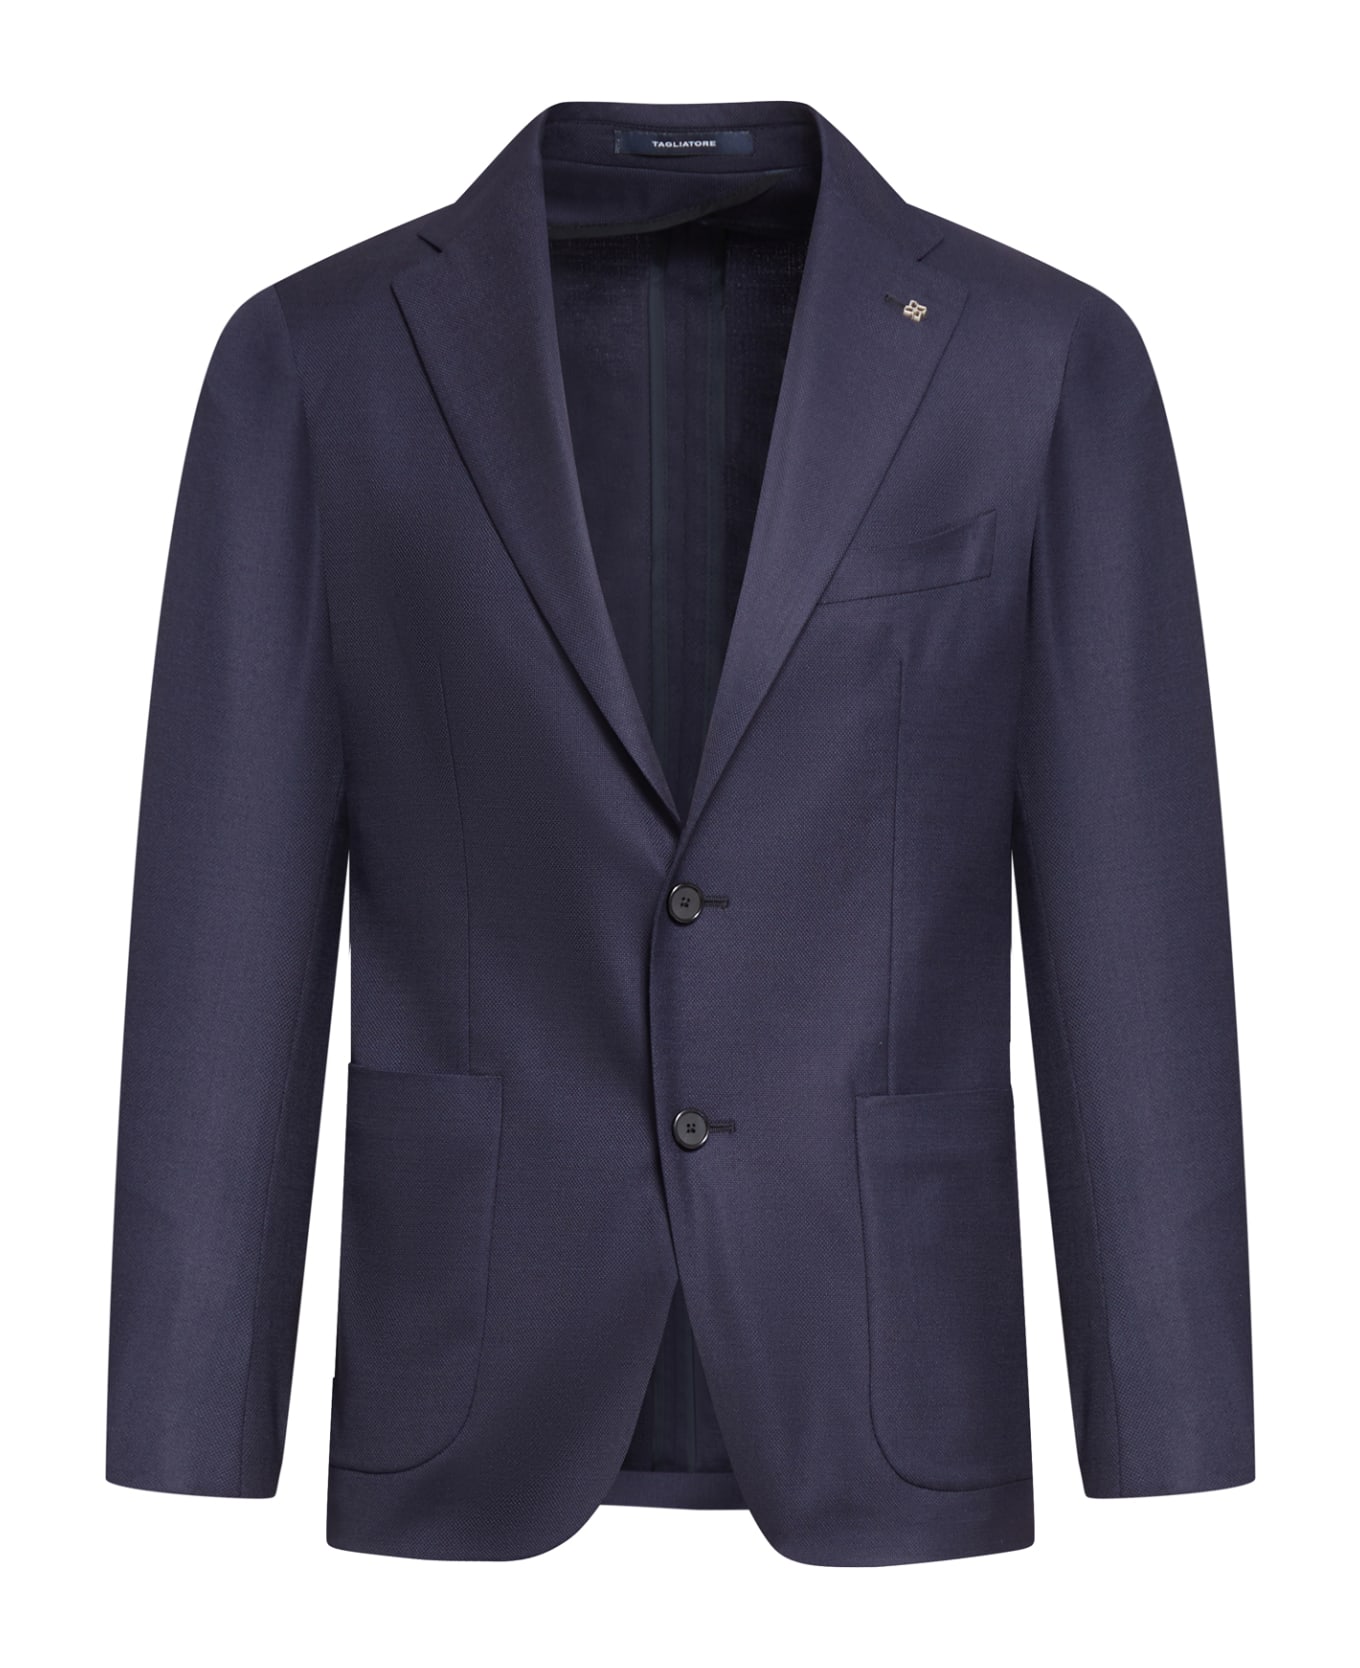 Tagliatore Jacket 1 Petto Blu In Opsak In Stok Service - Blue ブレザー